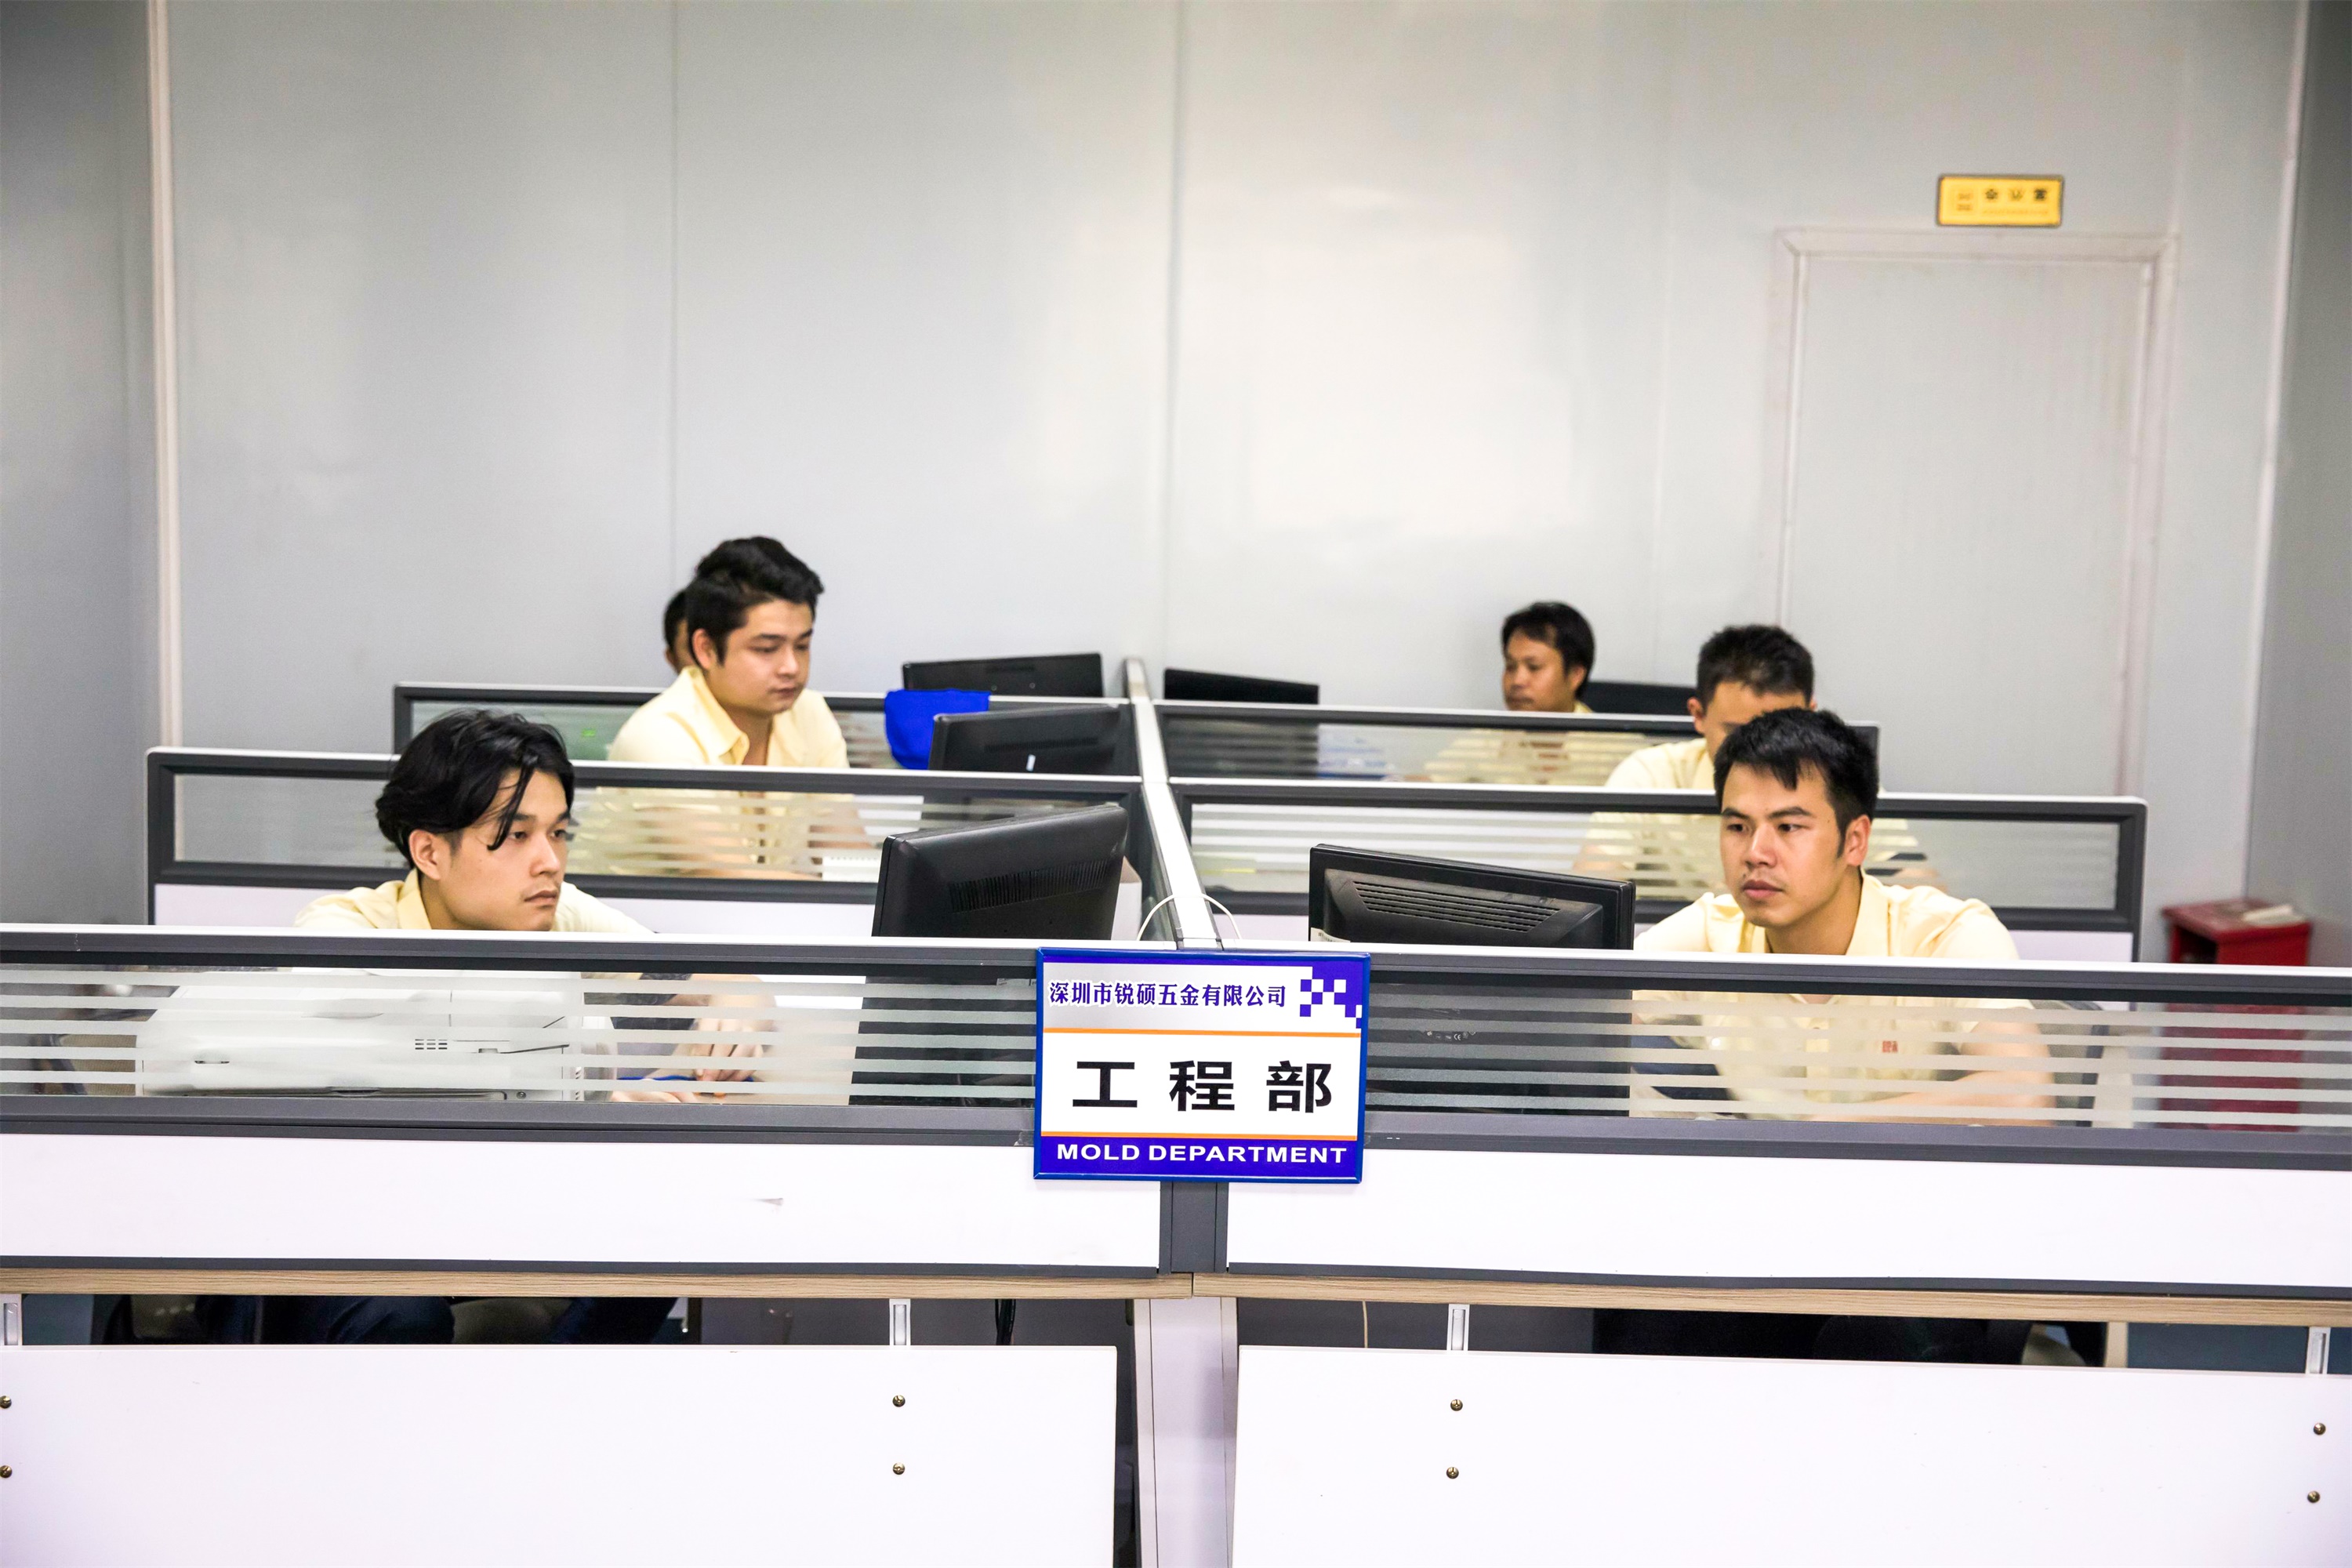 五金冲压-冲压加工,经验优势600家中国企业的共同选择